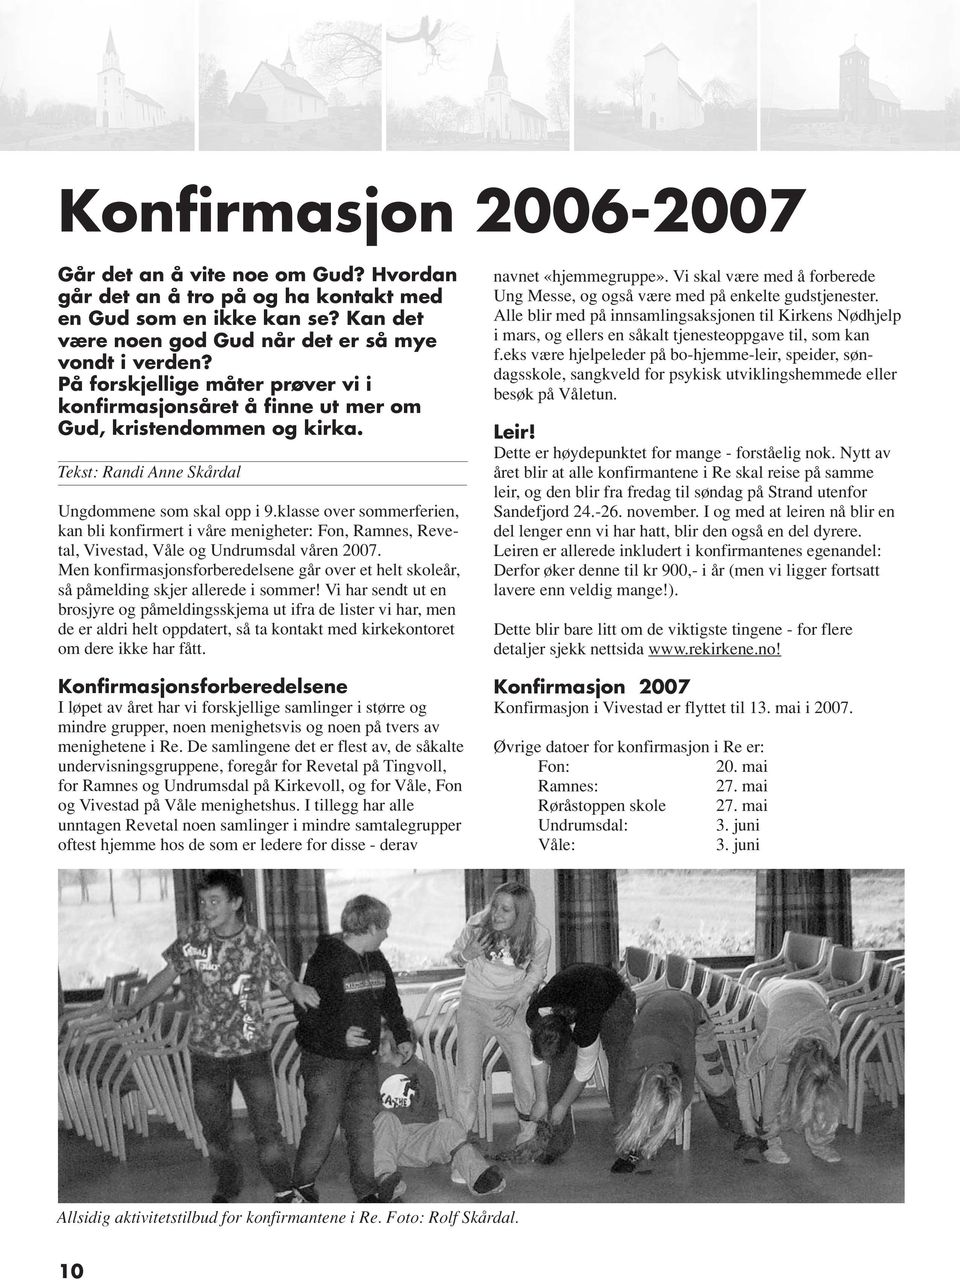 klasse over sommerferien, kan bli konfirmert i våre menigheter: Fon, Ramnes, Revetal, Vivestad, Våle og Undrumsdal våren 2007.